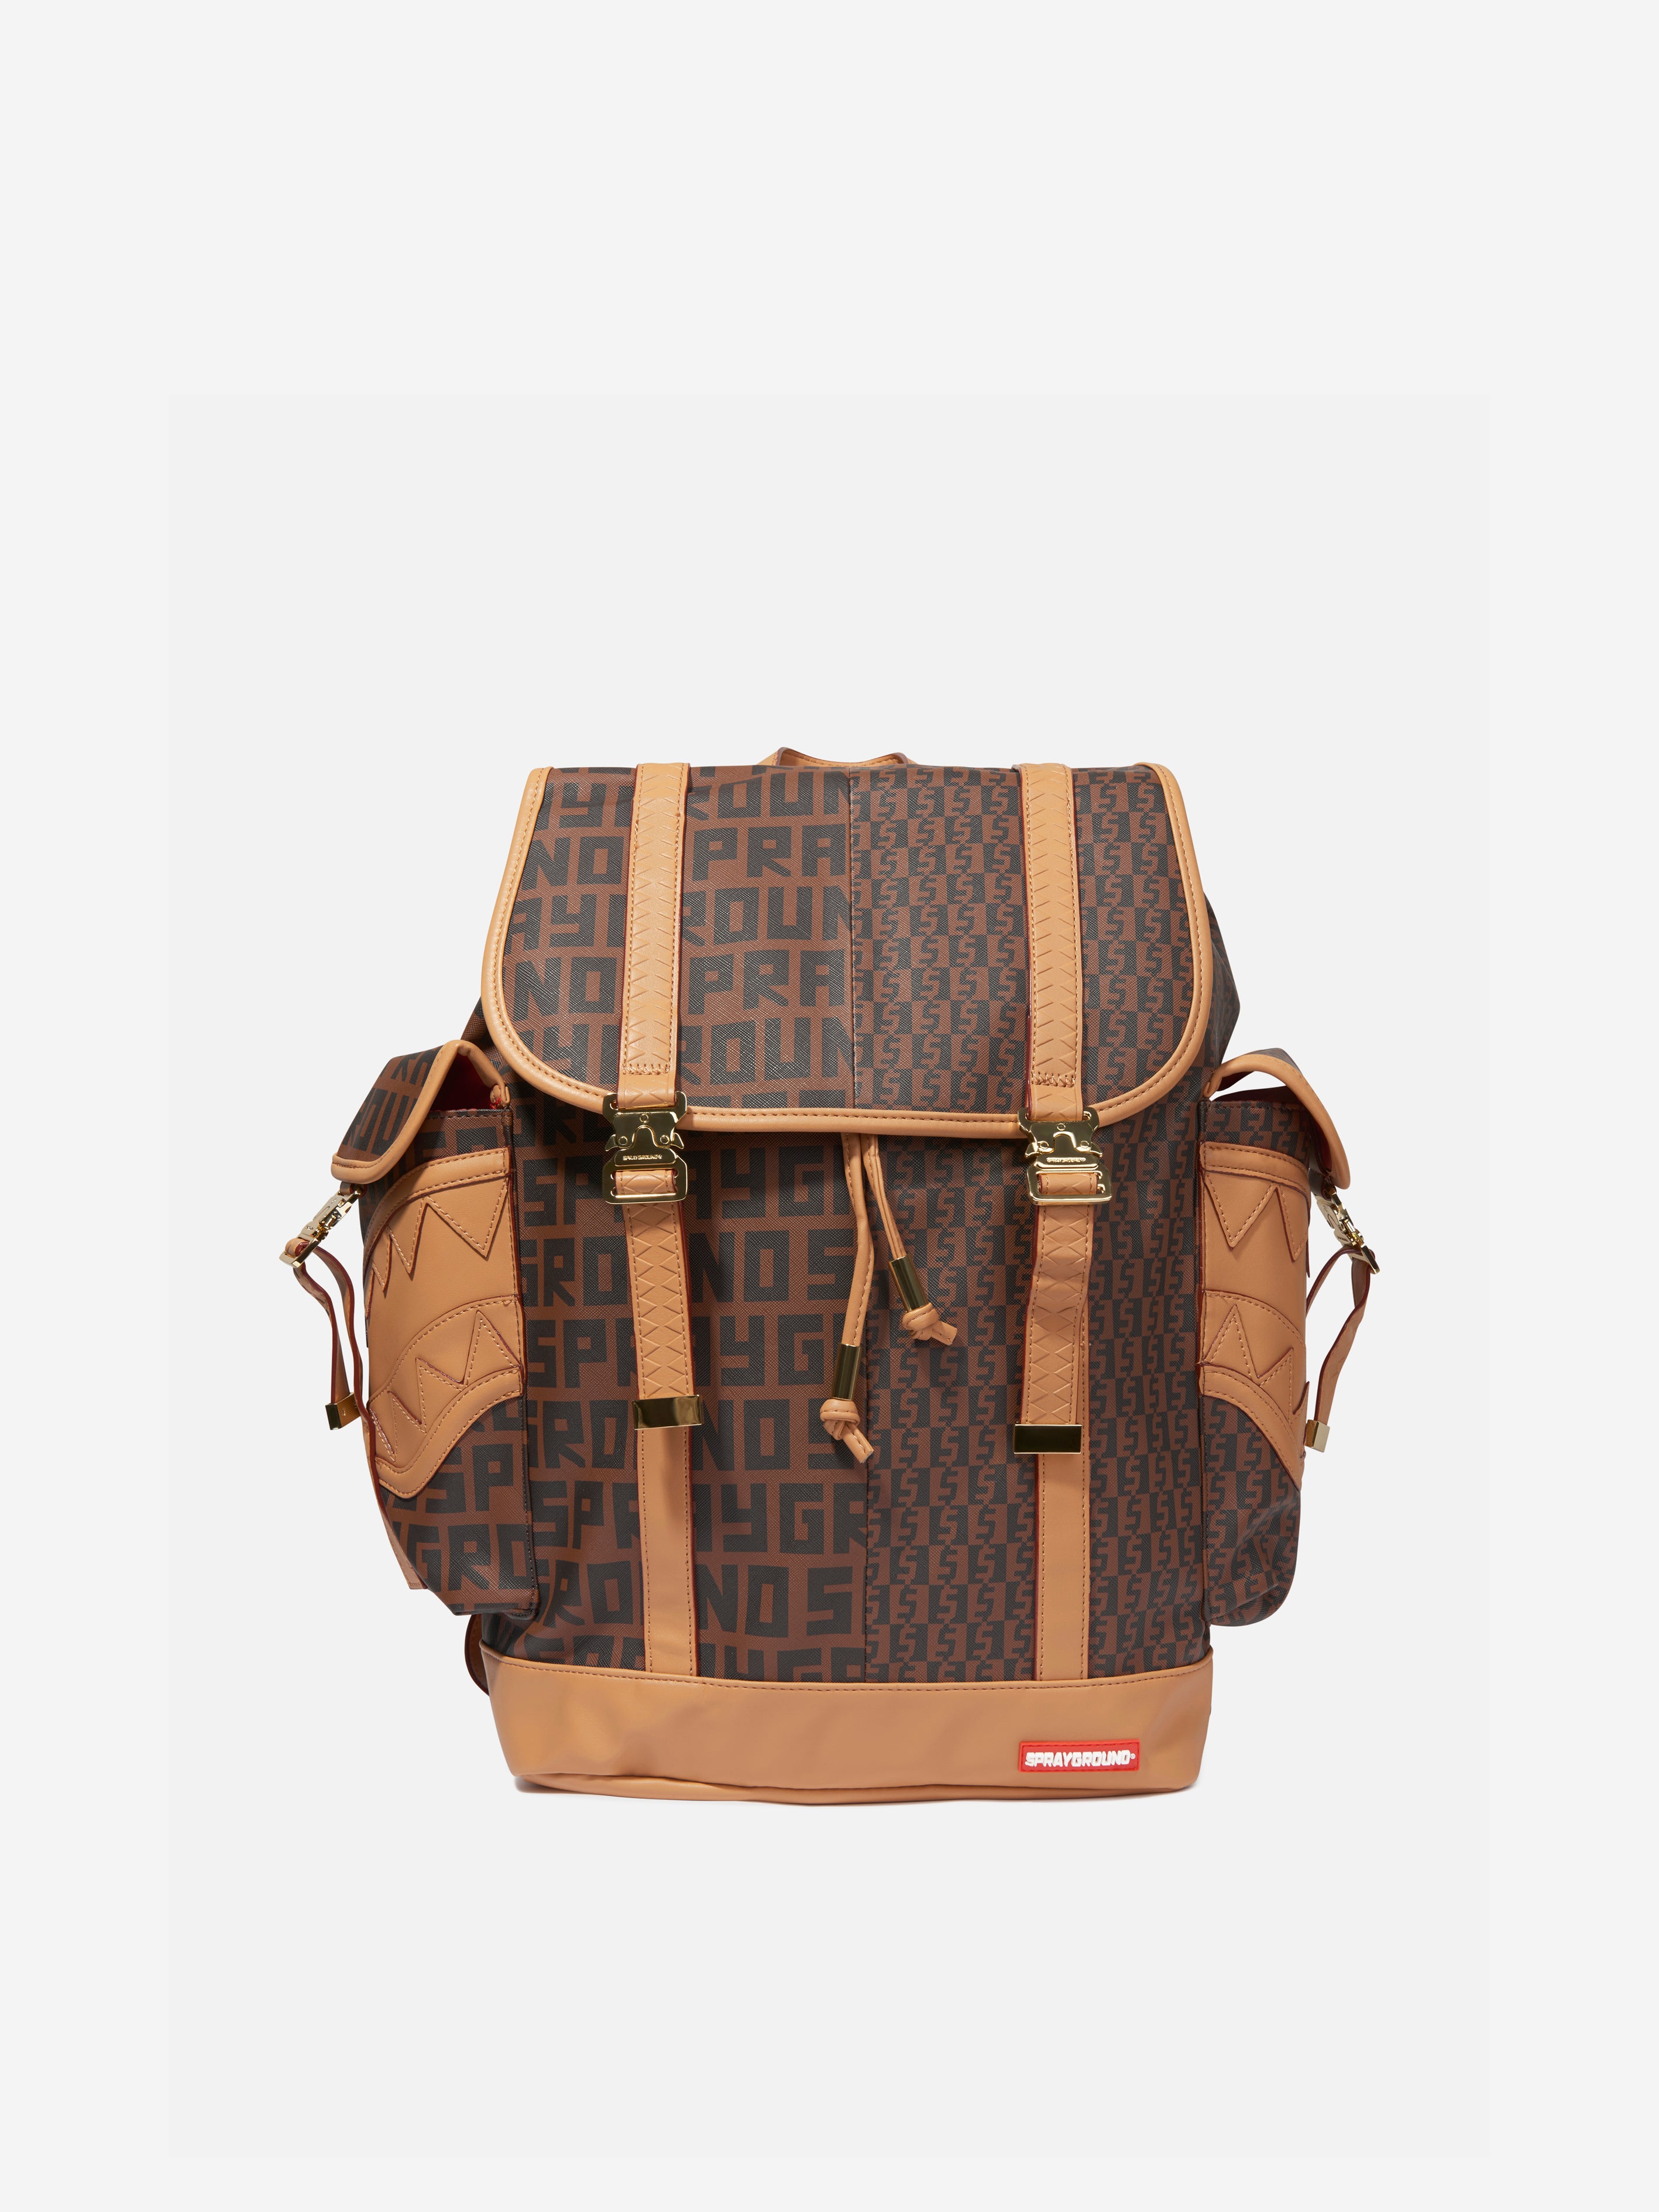 Louis Vuitton Sprayground Backpack Best Sale, SAVE 35